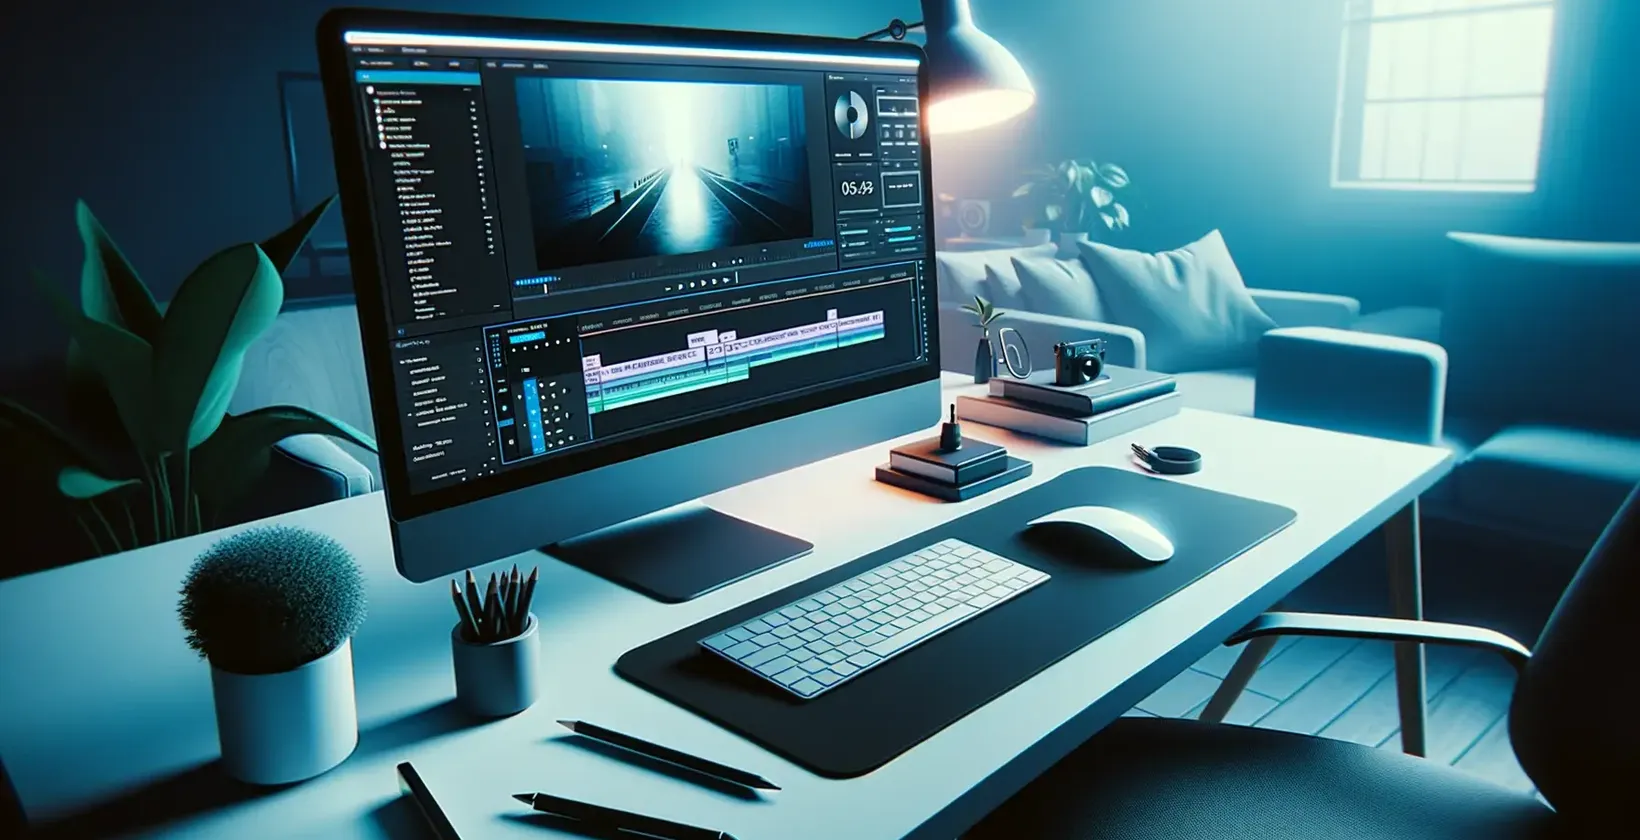 Pridávanie textu do videa pomocou Adobe After Effects ilustrovaného elegantným pracovným priestorom na úpravu s modrým svetlom